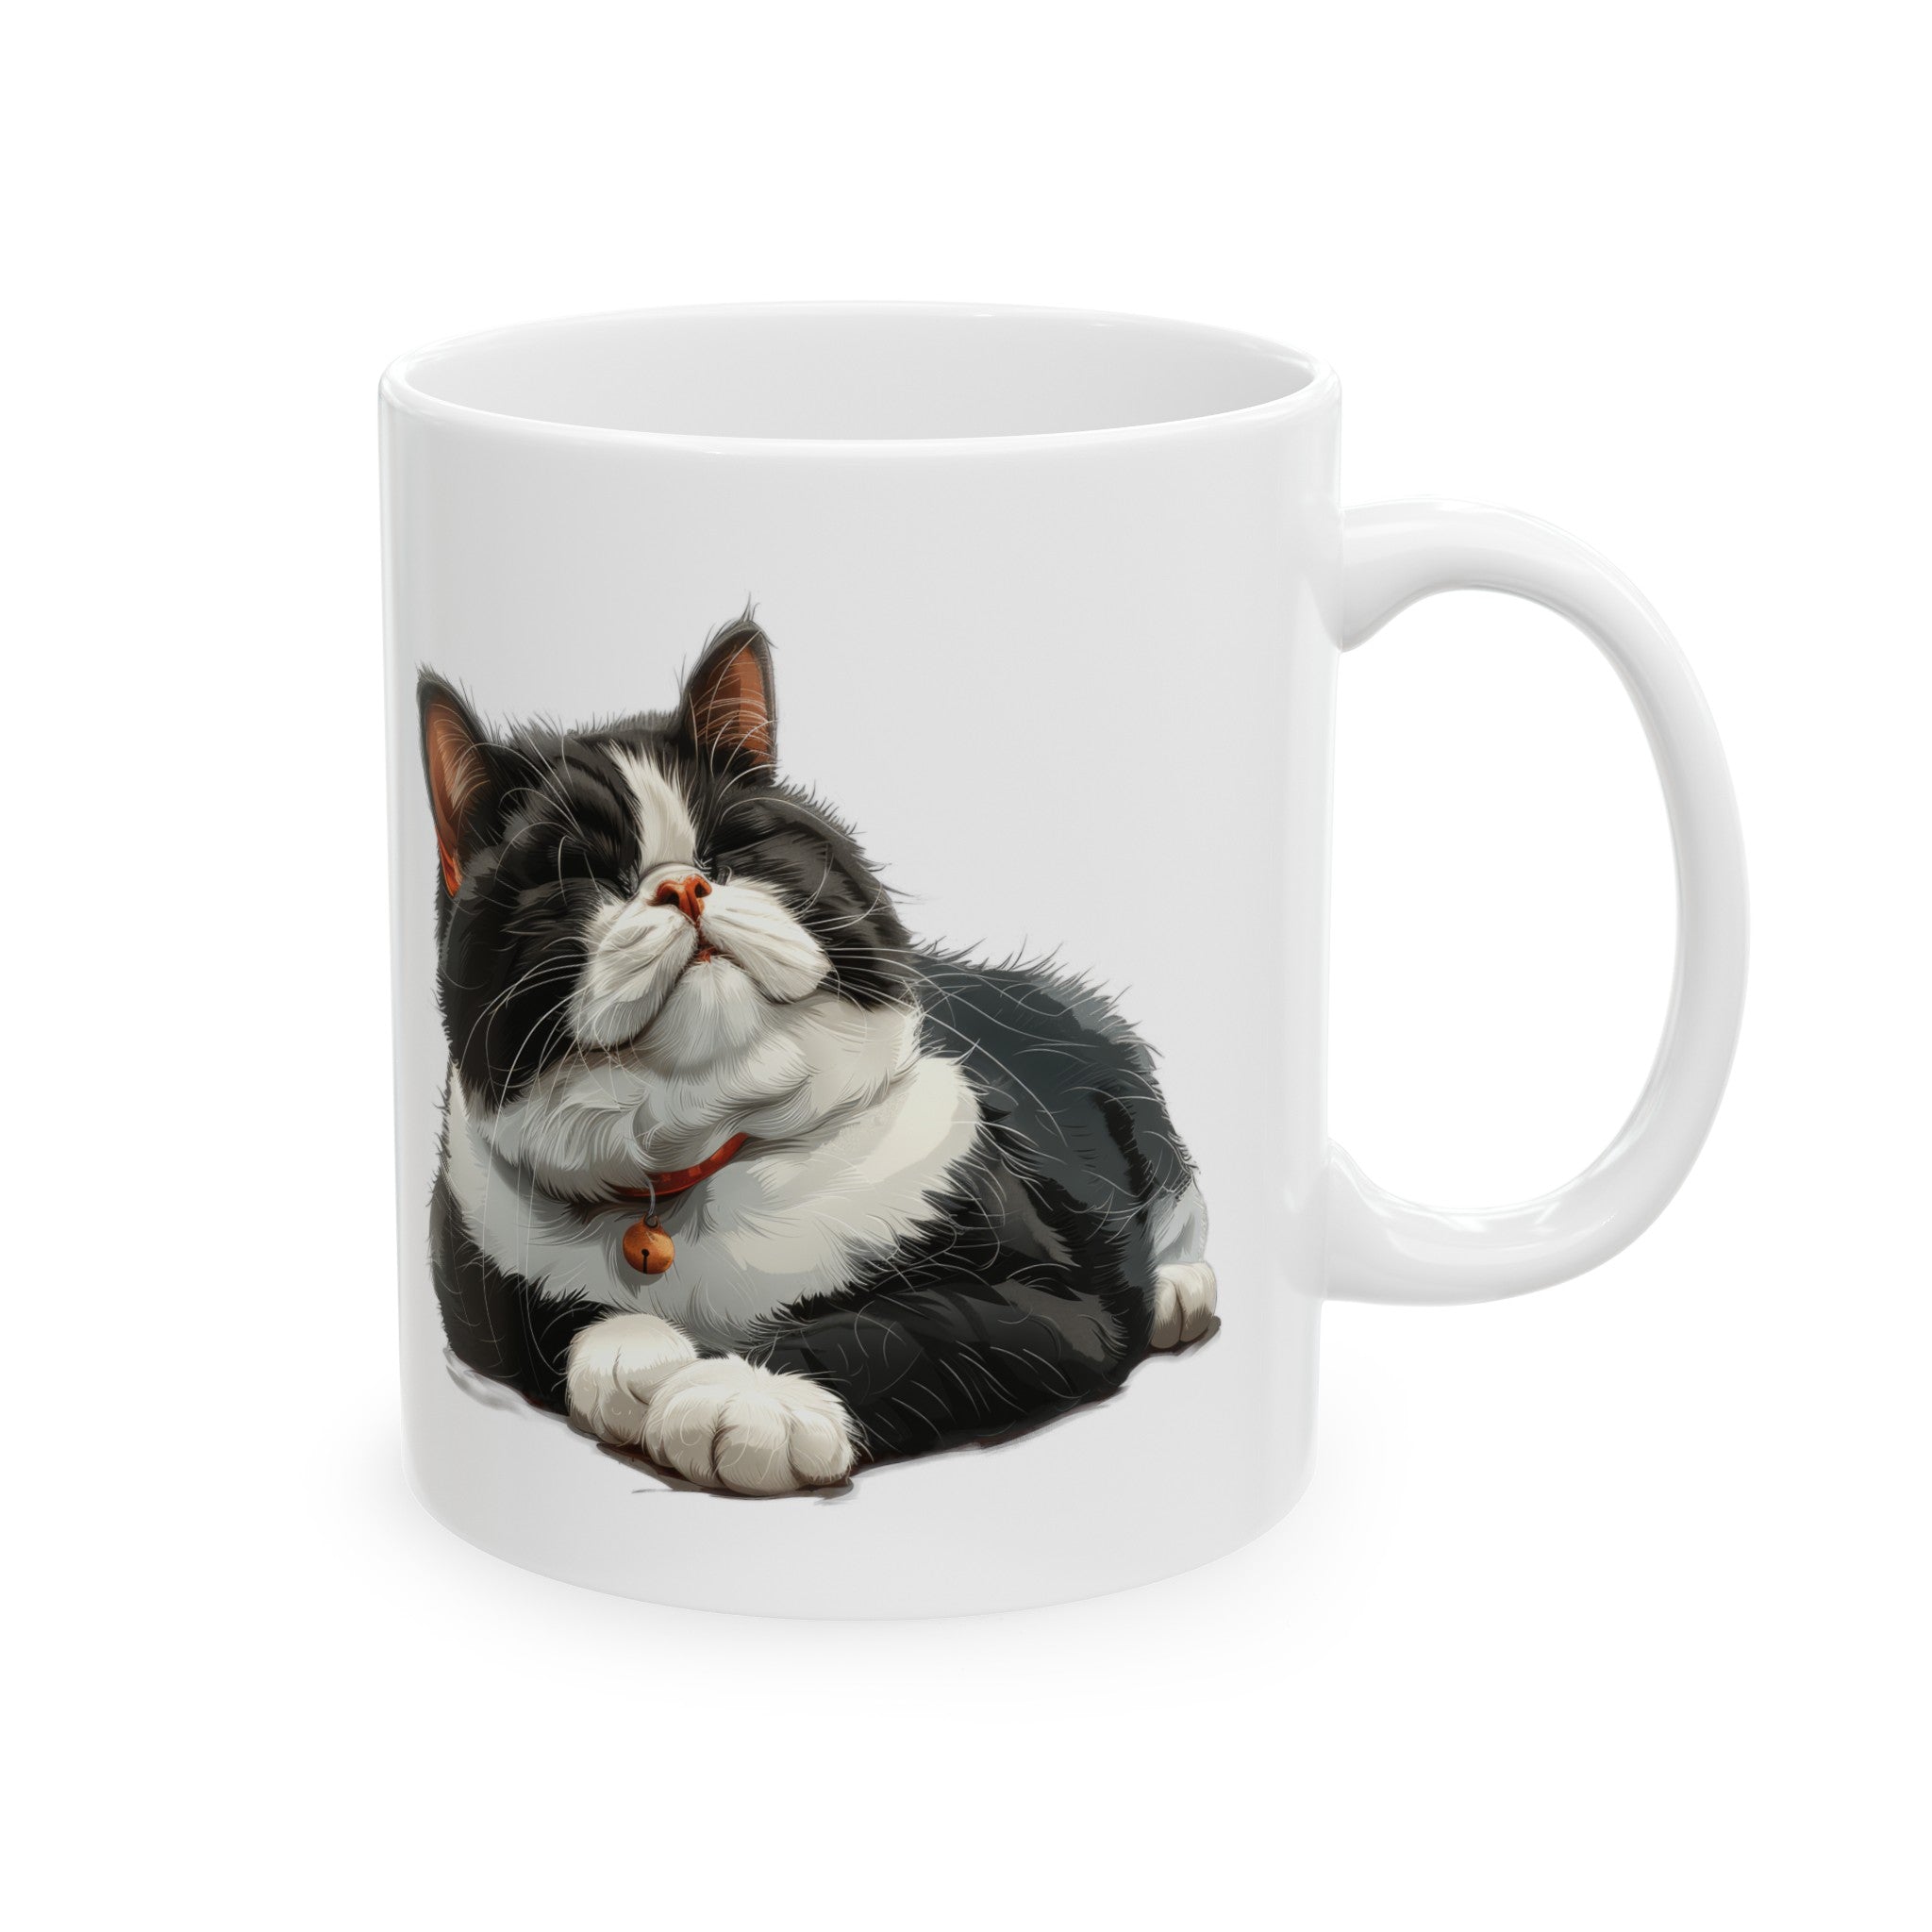 Sitting and Sleeping Tuxedo British Shorthair Cat Ceramic Mug, (11oz, 15oz)